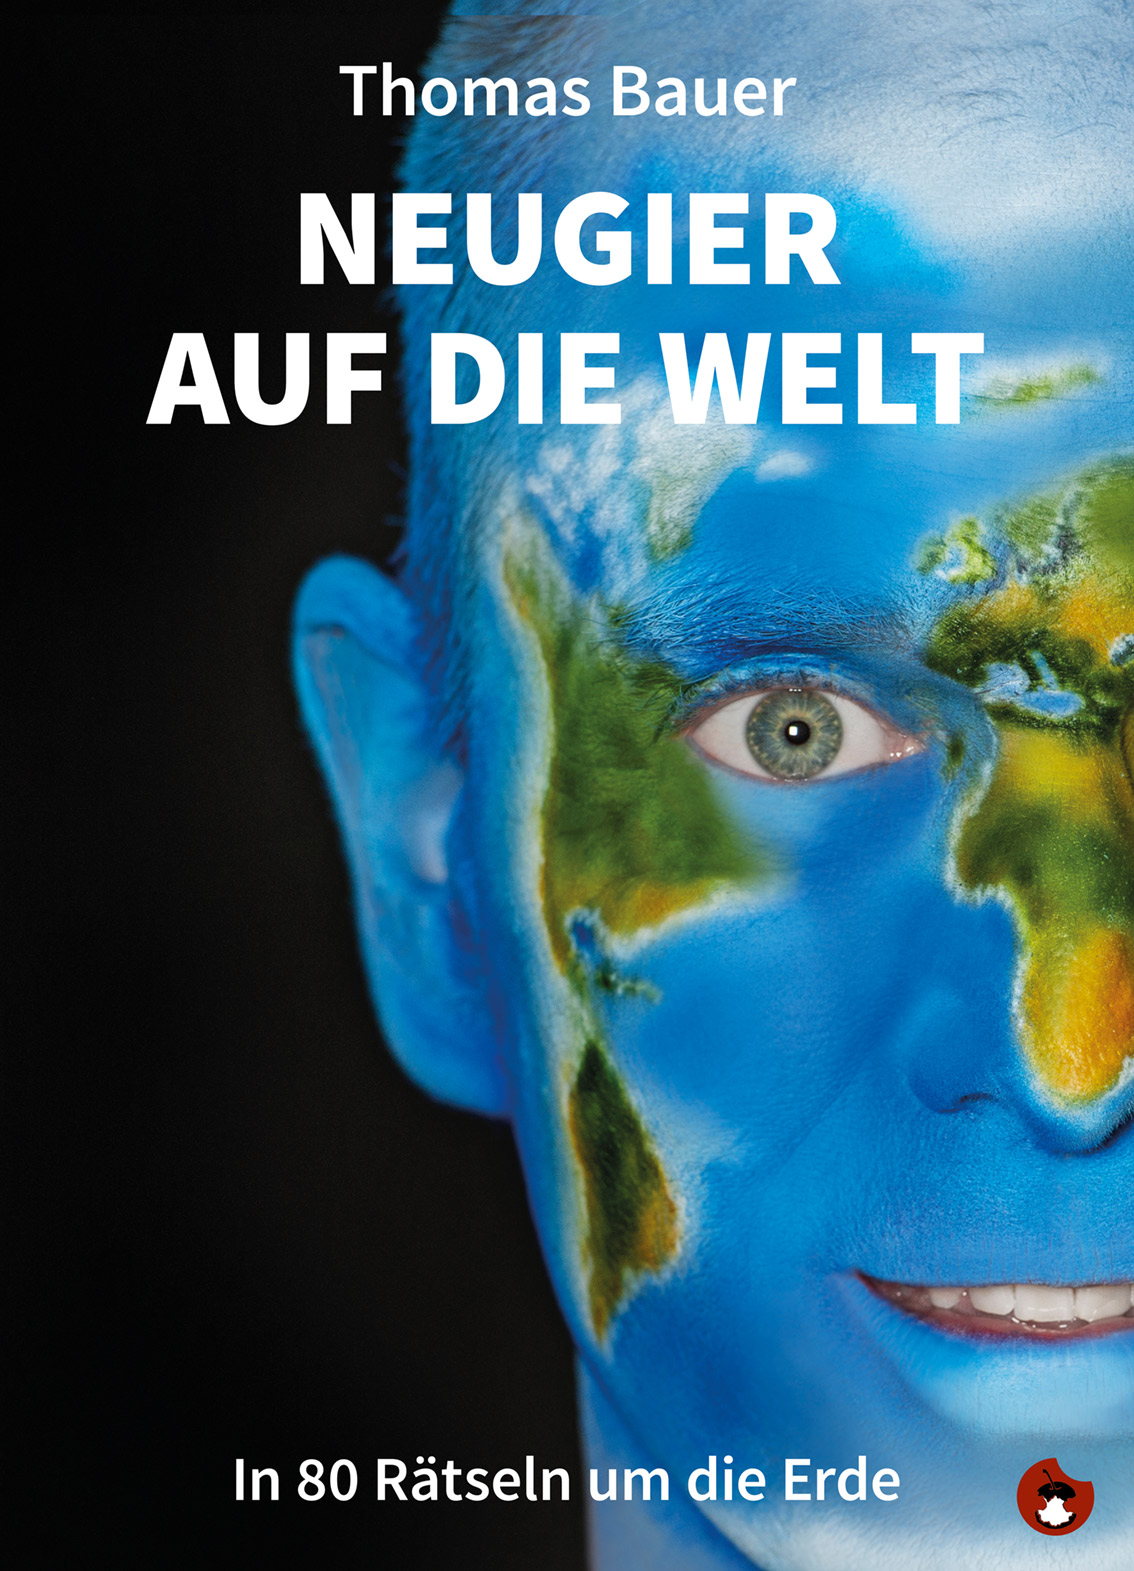 THOMAS BAUER: „Neugier auf die Welt – In 80 Rätseln um die Erde“ - periplaneta